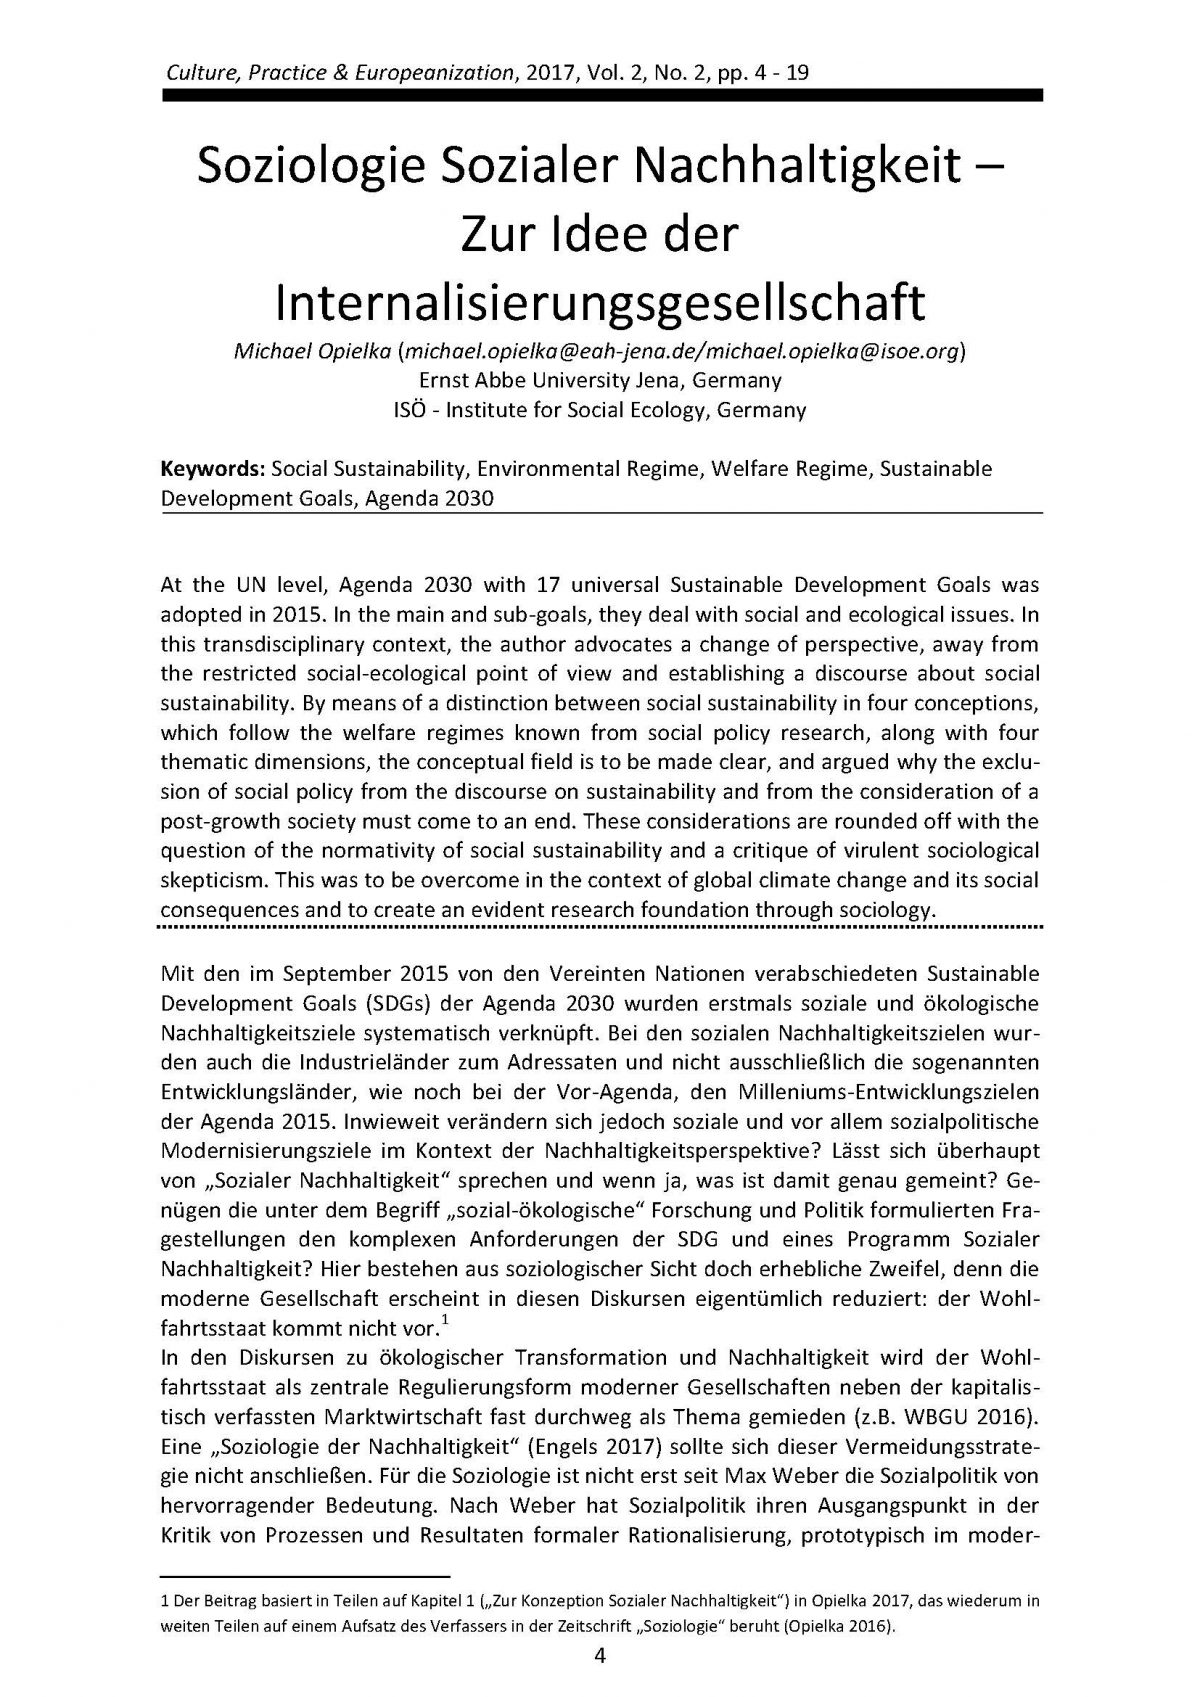 Michael Opielka, Soziologie Sozialer Nachhaltigkeit – Zur Idee der Internalisierungsgesellschaft (2017) 